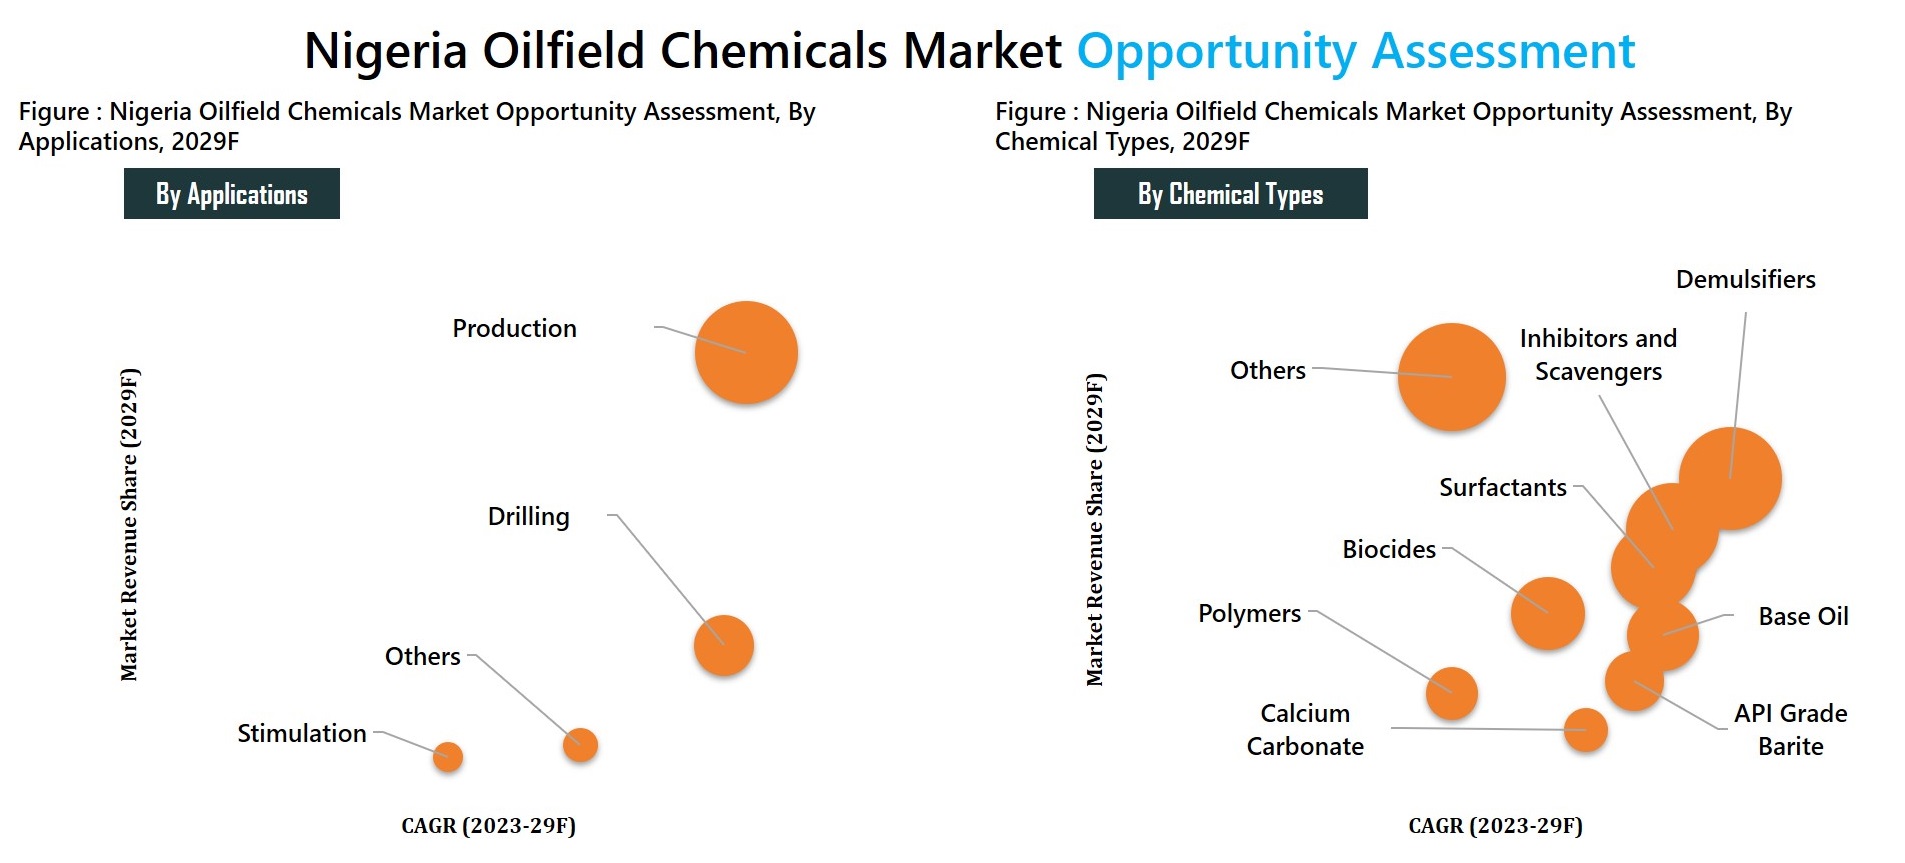 Nigeria Oilfield Chemicals Market